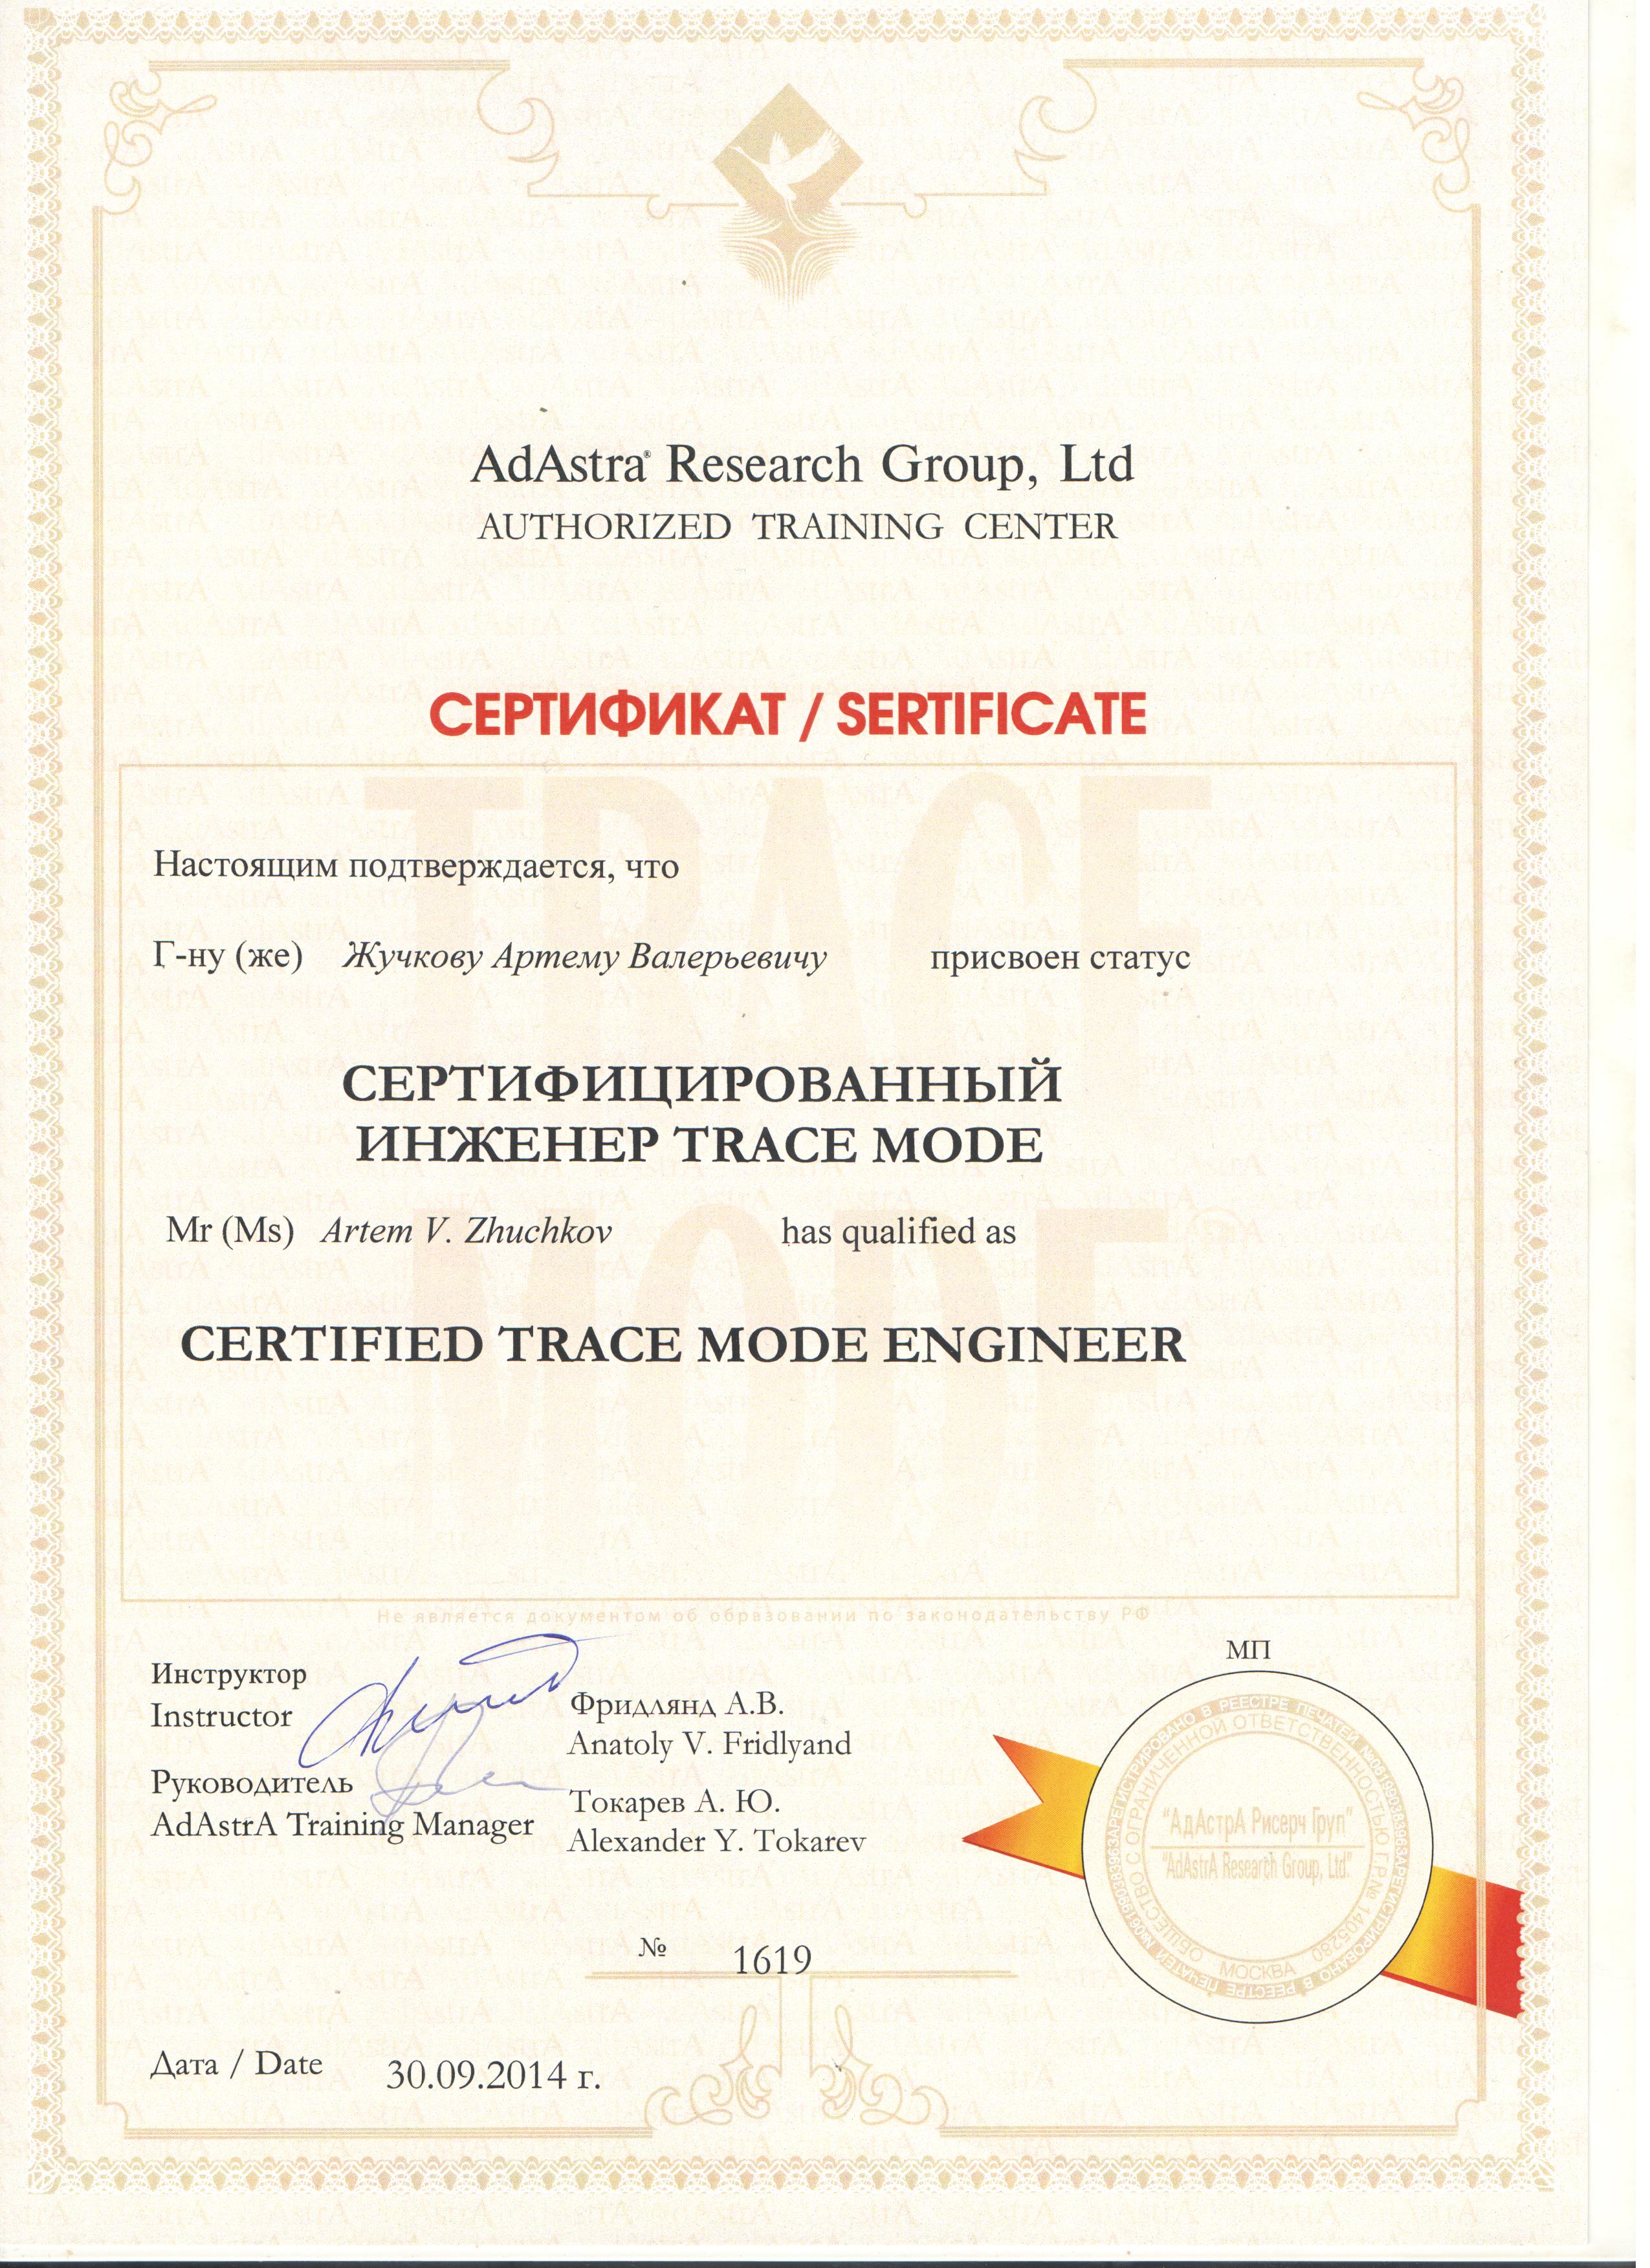 Сертификат о прохождении обучения AdAstrA